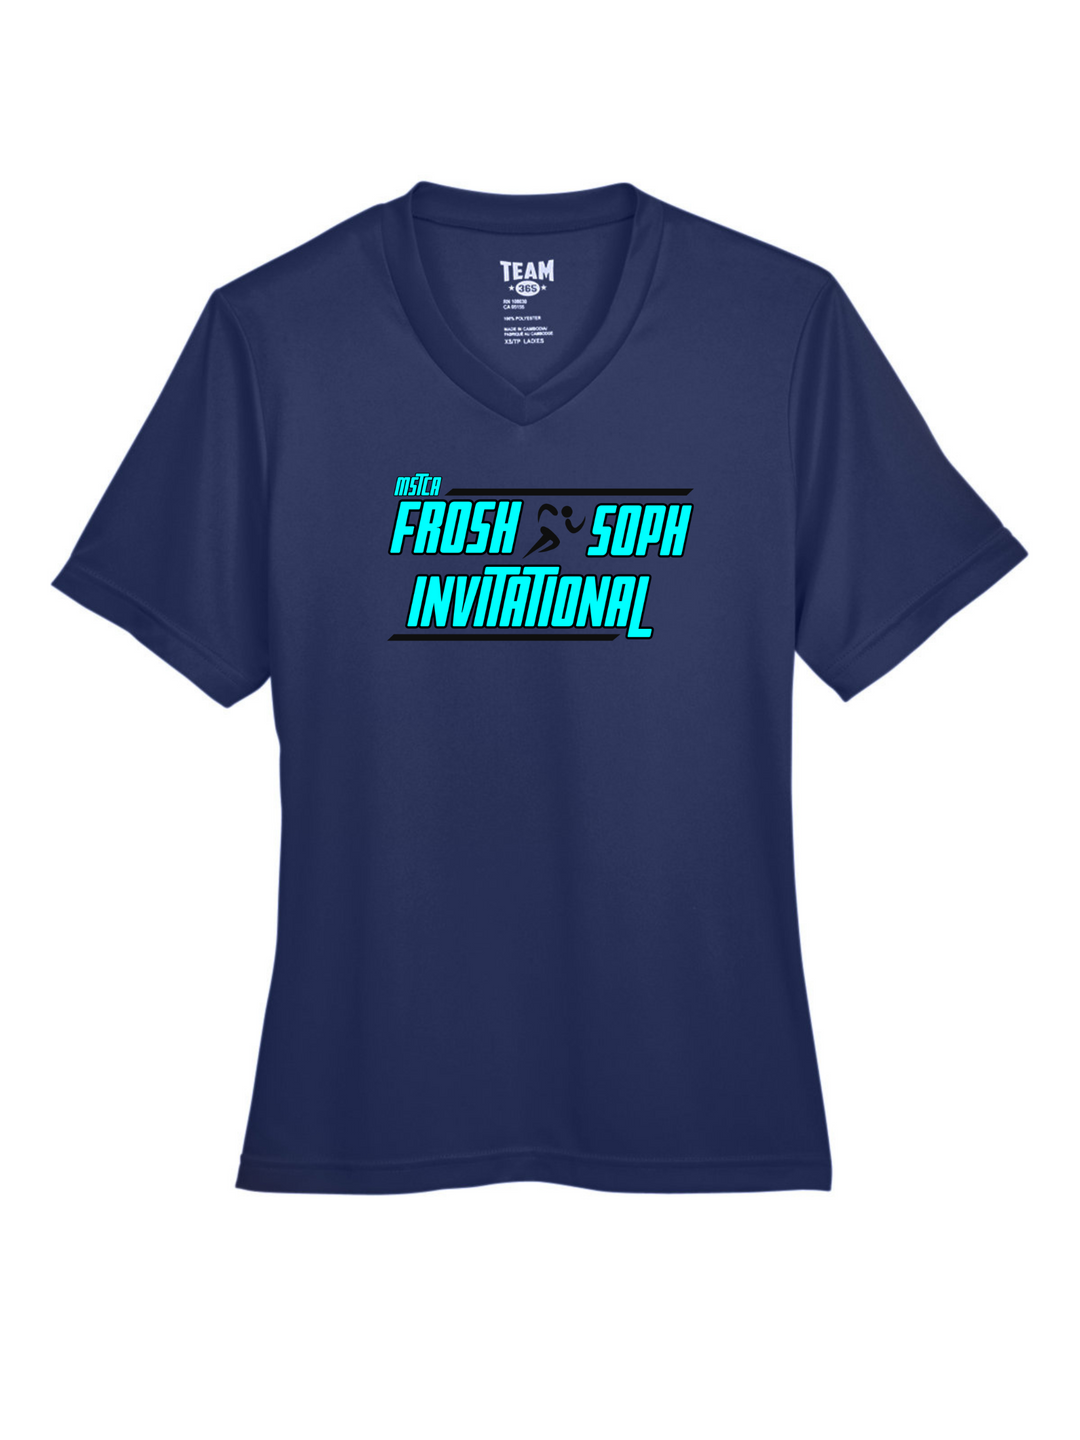 MSTCA William Kane Frosh/Soph Invite - Women's Performance T-Shirt (TT11W)